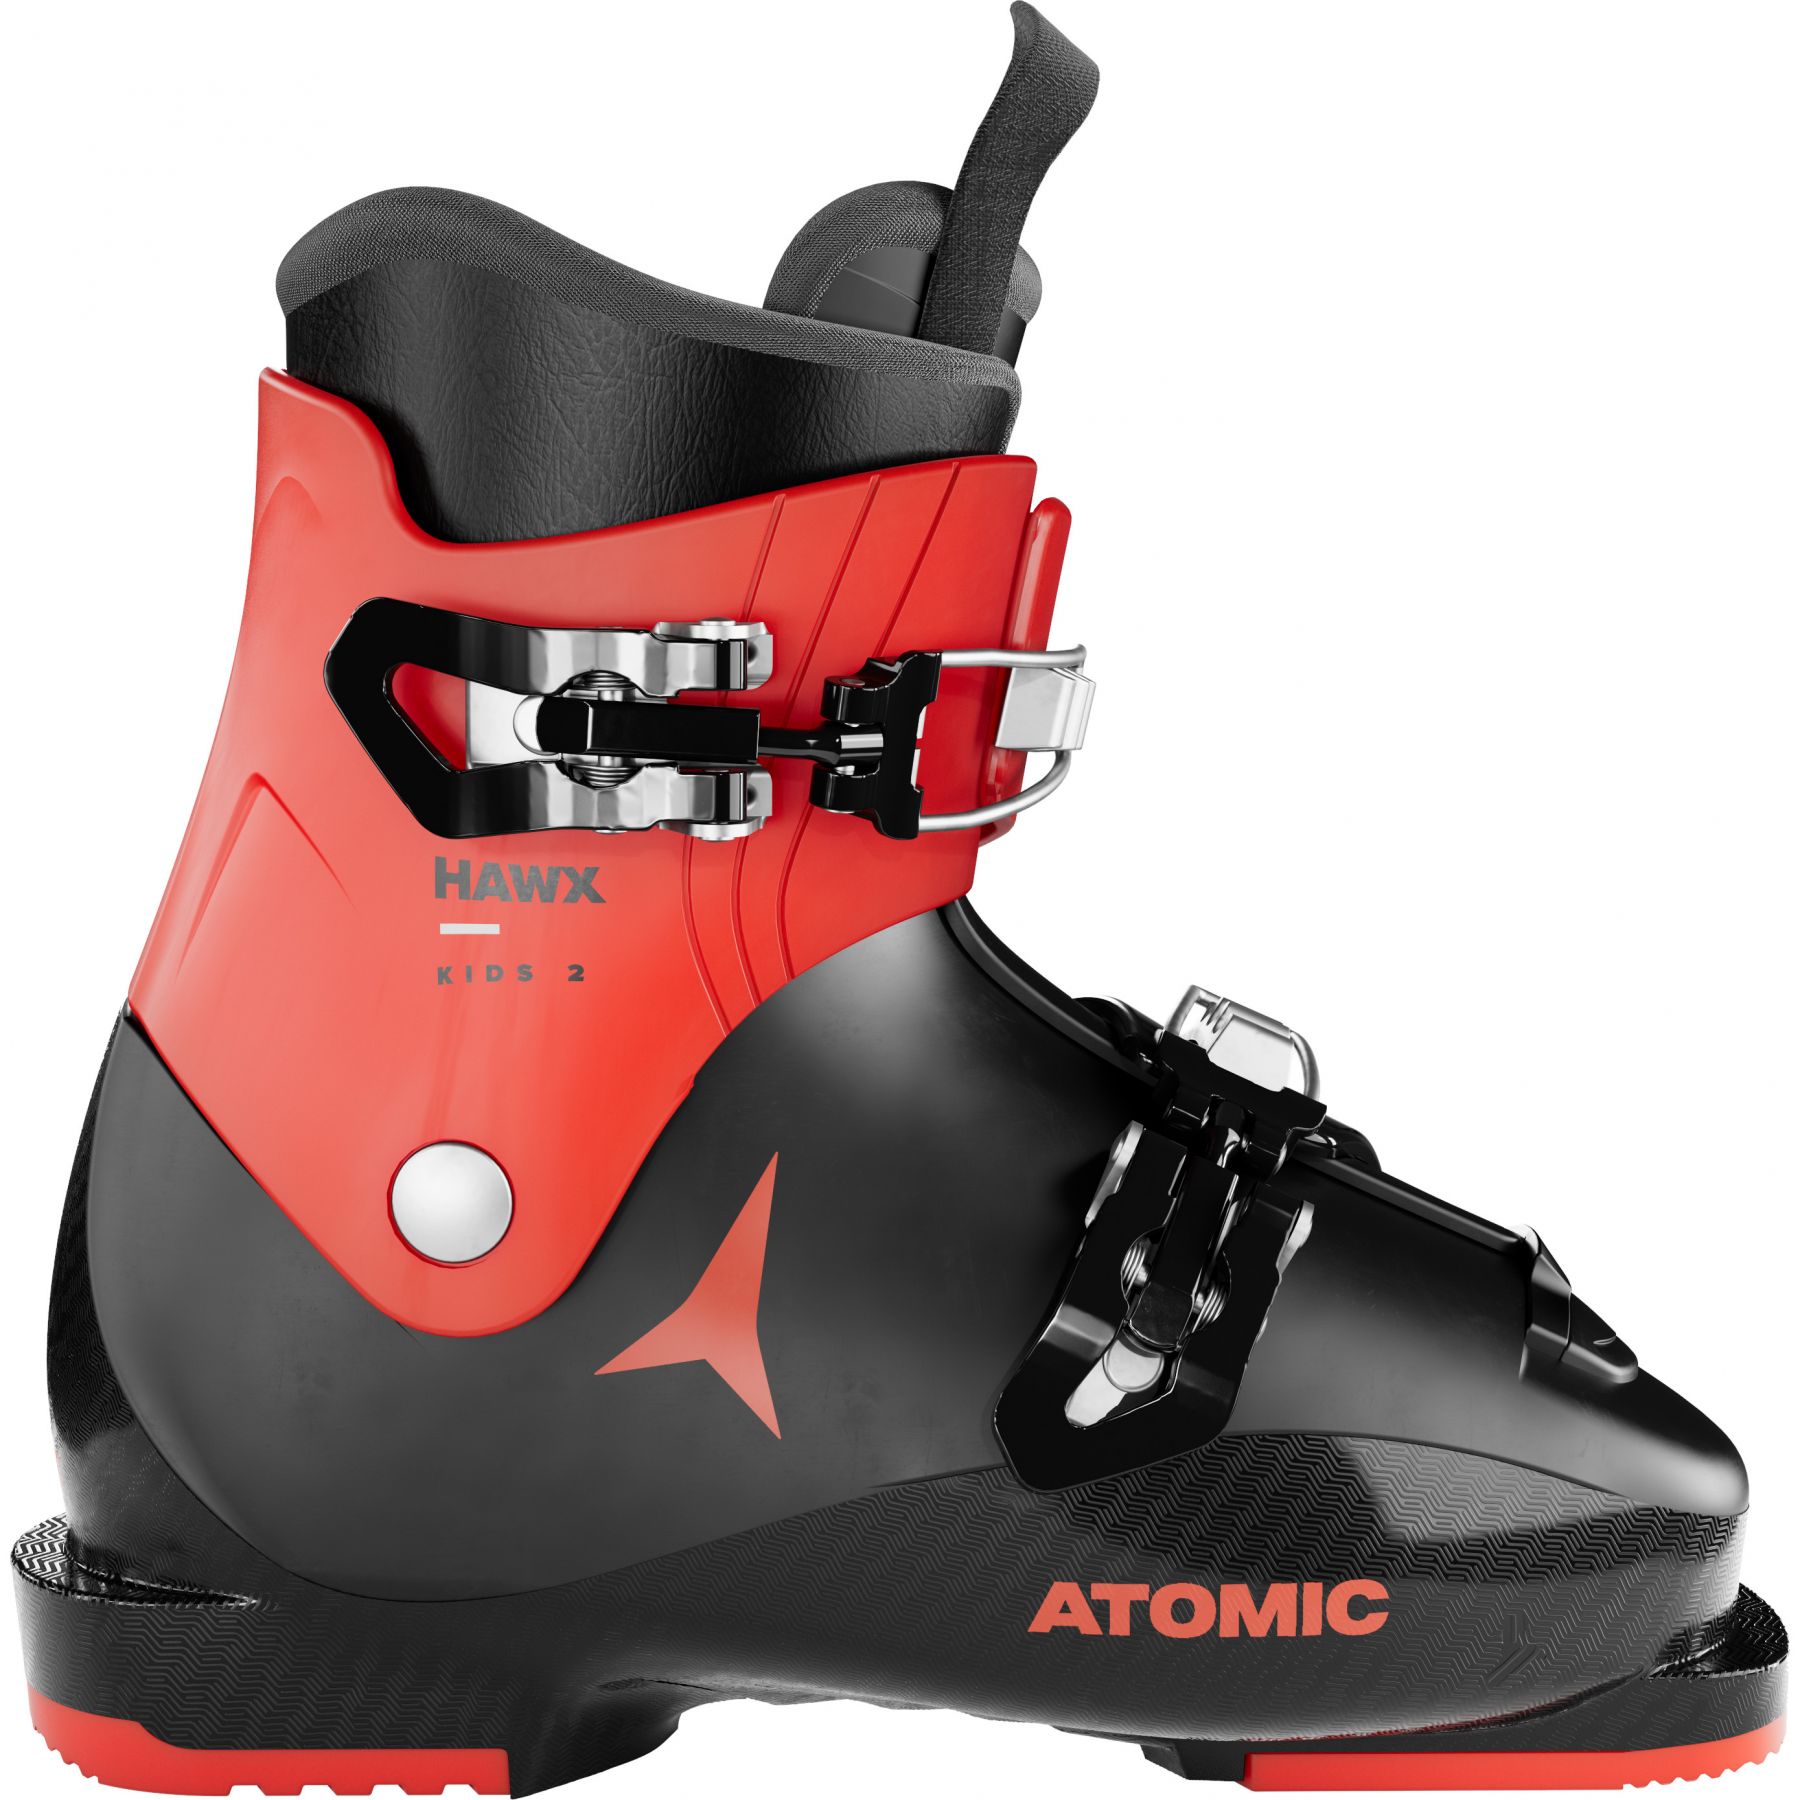 Billede af Atomic Hawx Kids 2, skistøvler, junior, sort/rød hos Skisport.dk